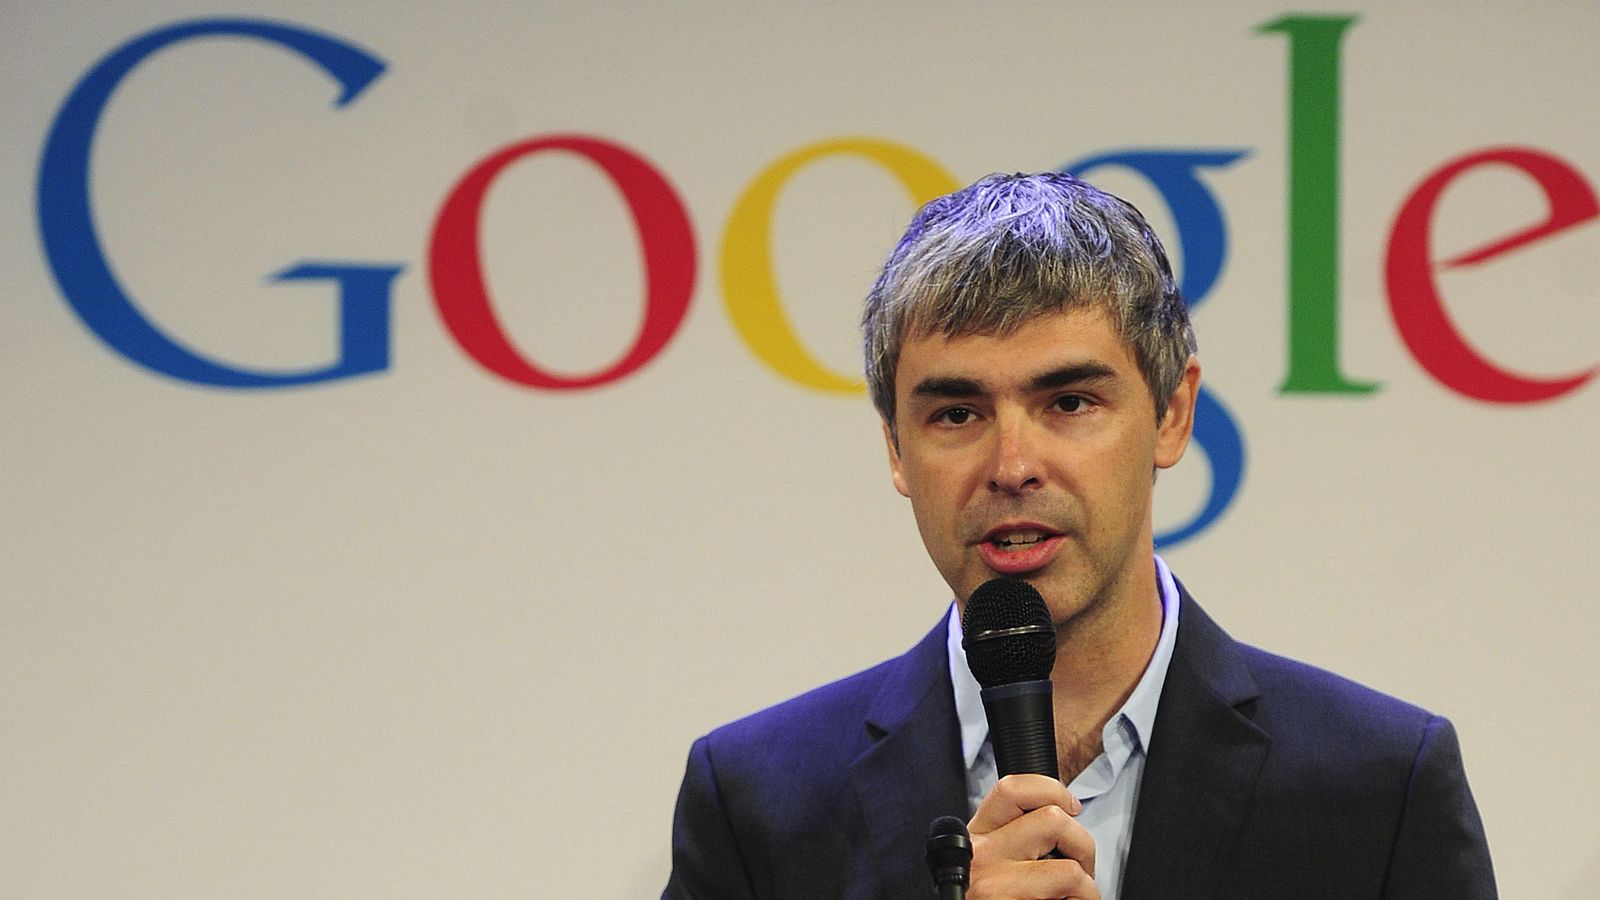 Foto: El cofundador de Google, Larry Page